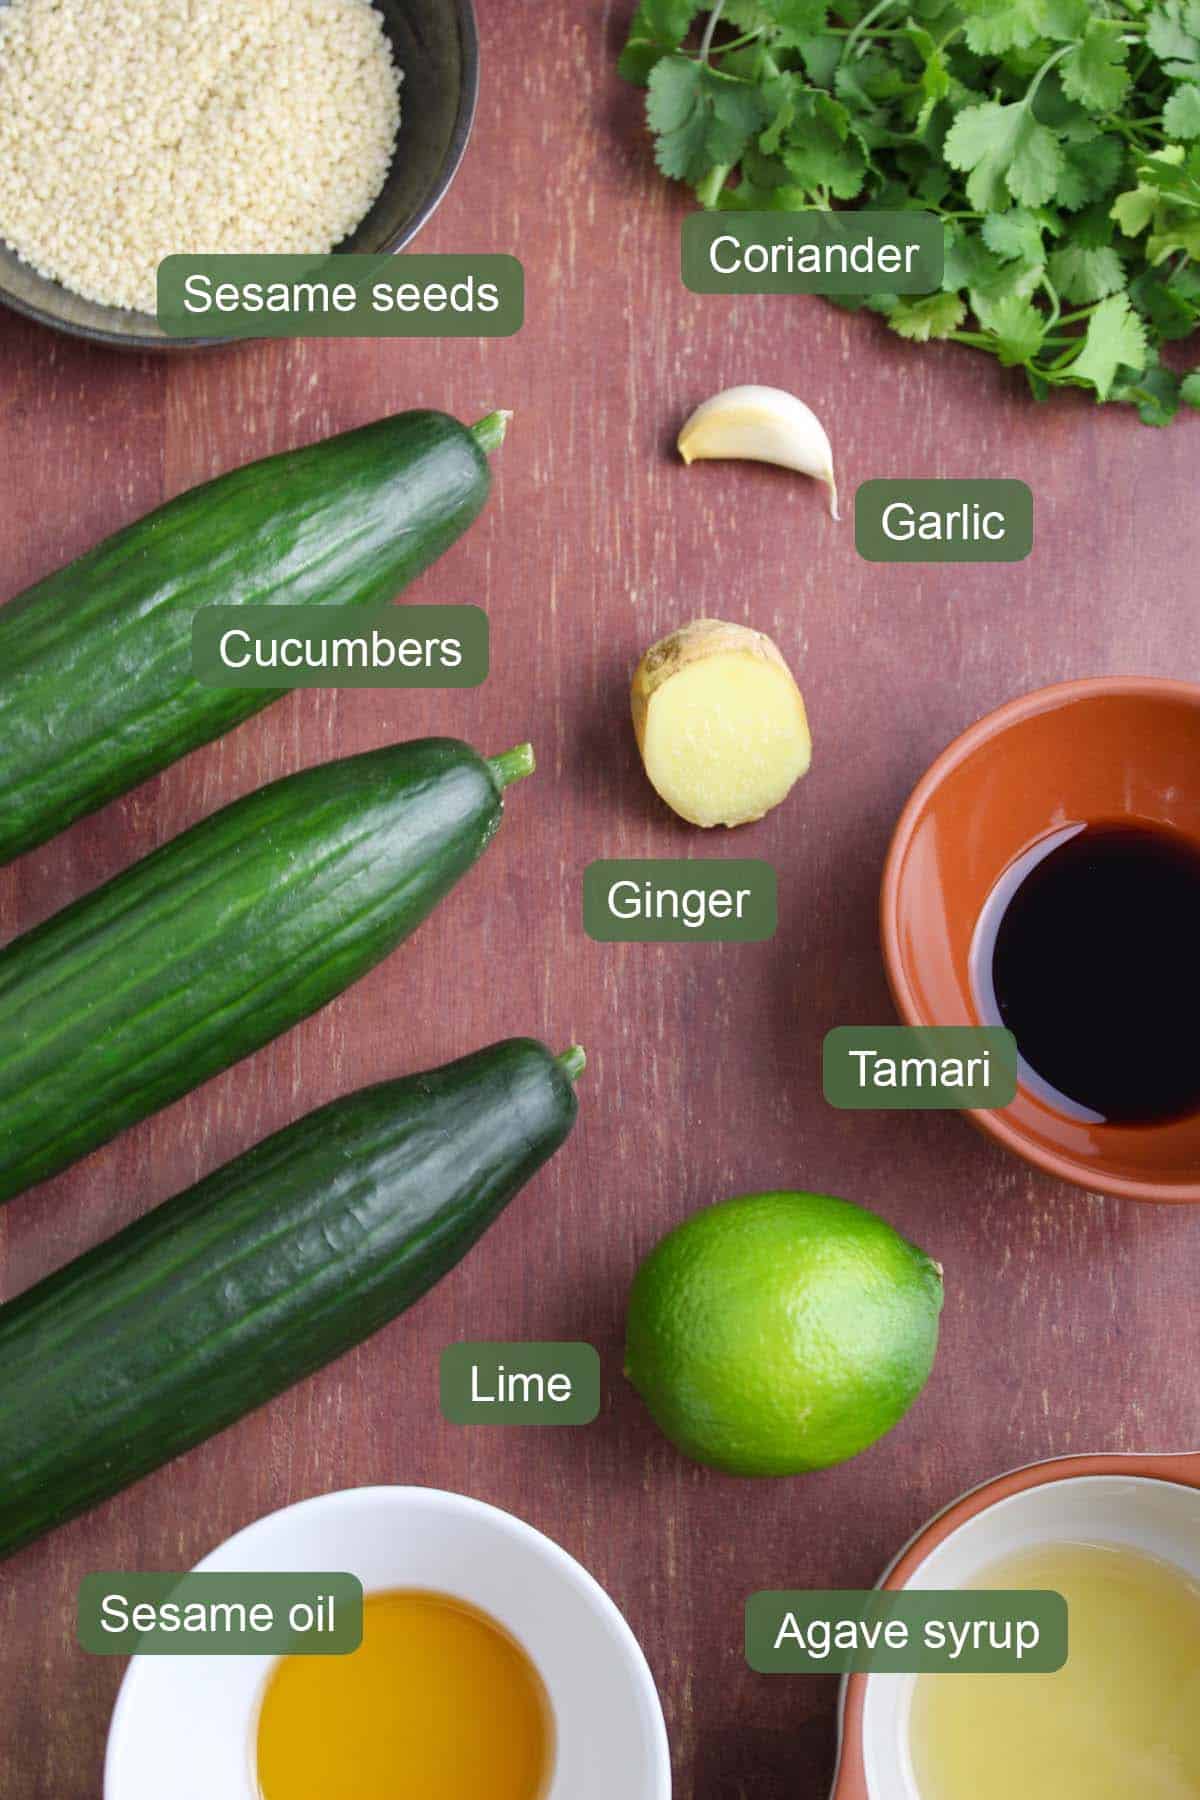 List of Ingredients to Make Vegan Cucumber Salad